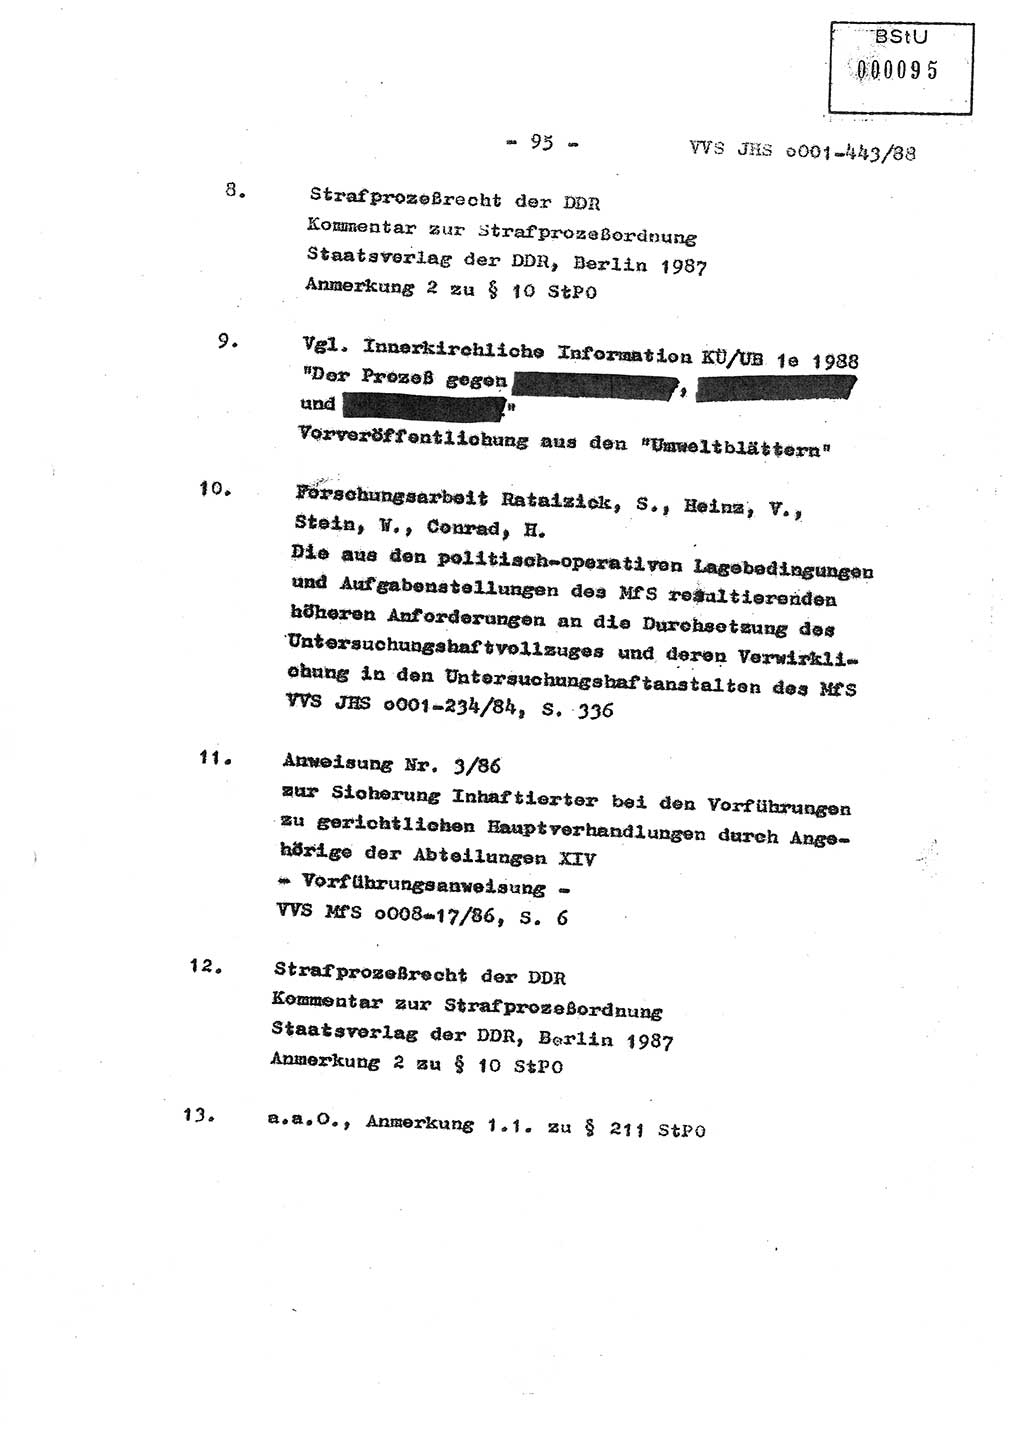 Diplomarbeit Hauptmann Michael Rast (Abt. ⅩⅣ), Major Bernd Rahaus (Abt. ⅩⅣ), Ministerium für Staatssicherheit (MfS) [Deutsche Demokratische Republik (DDR)], Juristische Hochschule (JHS), Vertrauliche Verschlußsache (VVS) o001-443/88, Potsdam 1988, Seite 95 (Dipl.-Arb. MfS DDR JHS VVS o001-443/88 1988, S. 95)